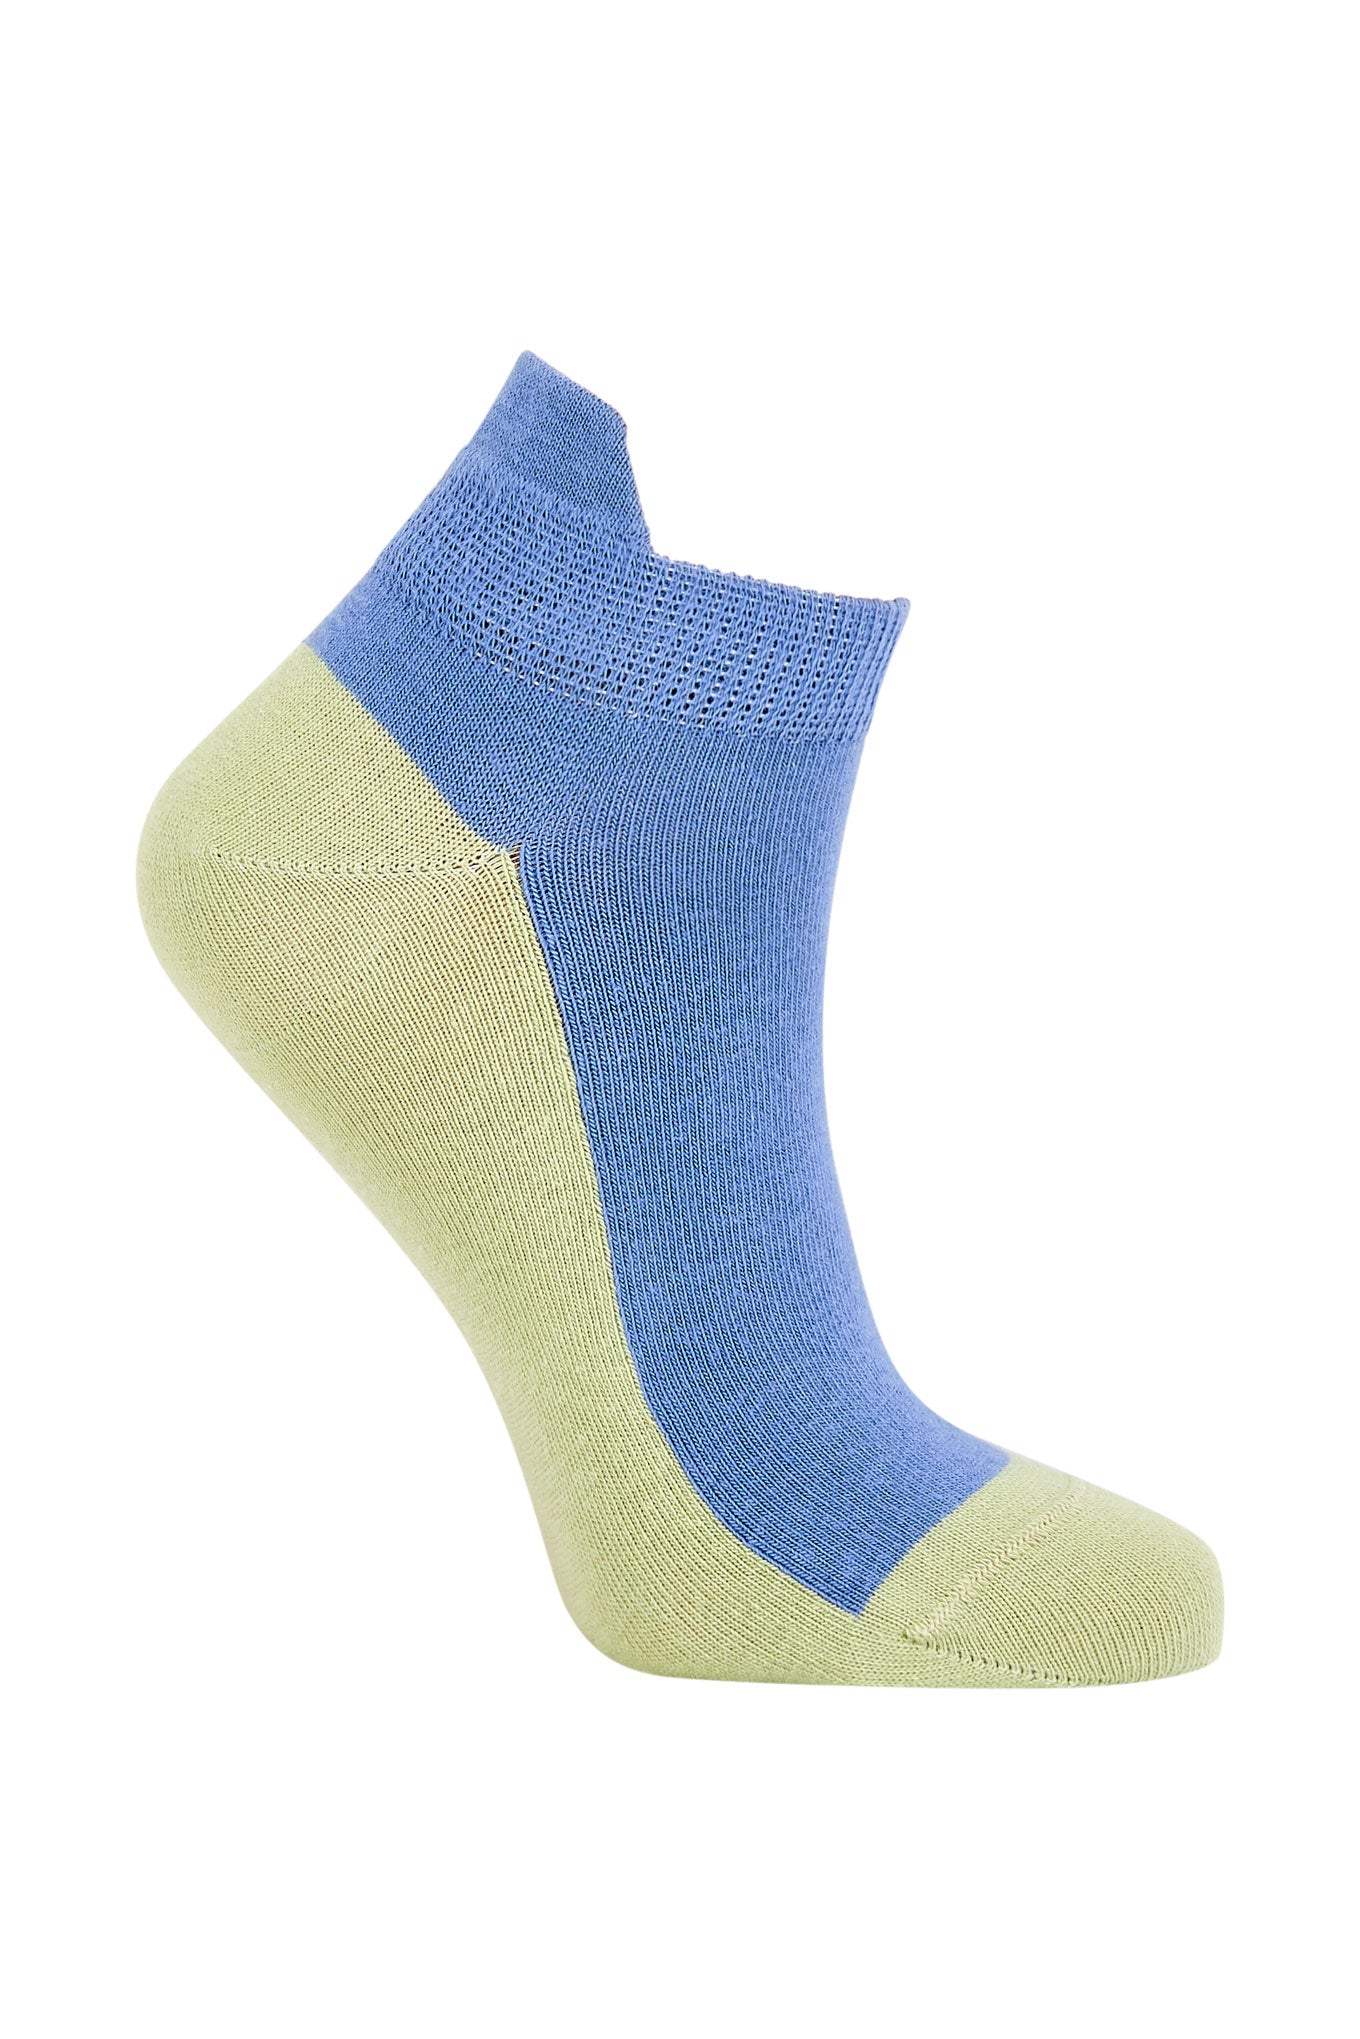 PUNCHY ANKLE Blue - GOTS Organic Cotton Socks, EUR 41-43